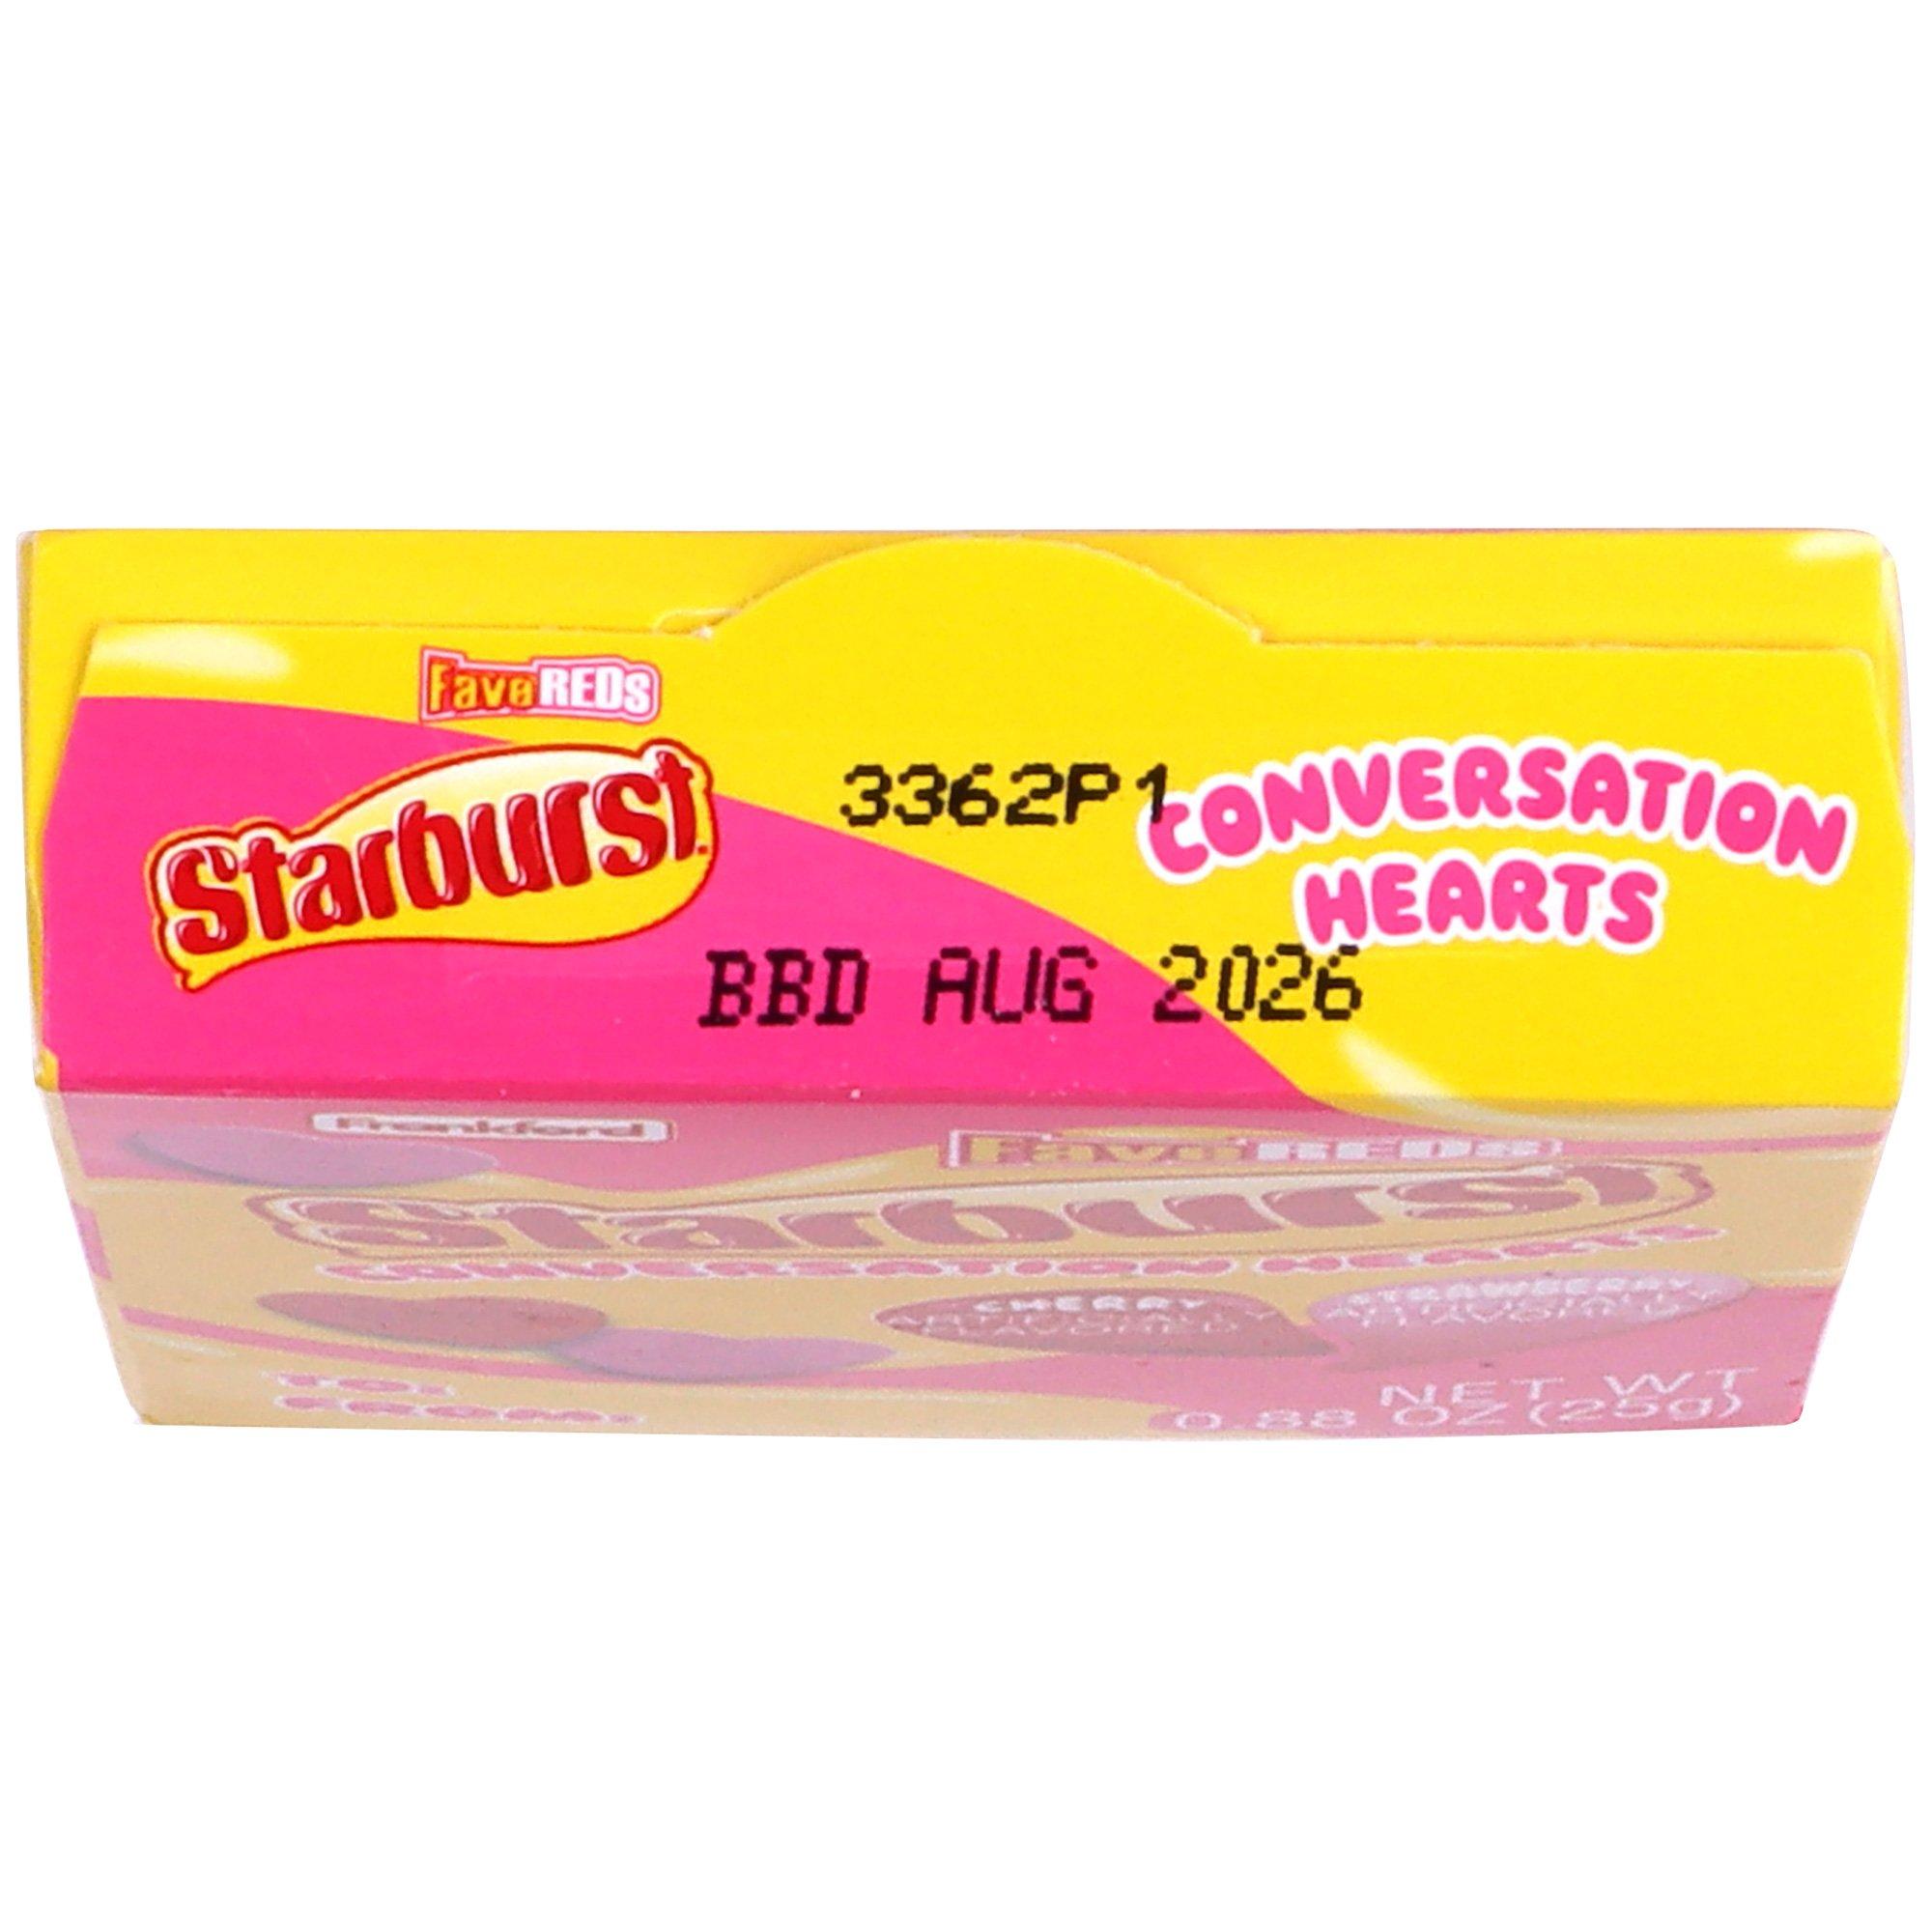 Starburst Fave Reds Conversation Hearts Valentine's Day Box, 0.88oz